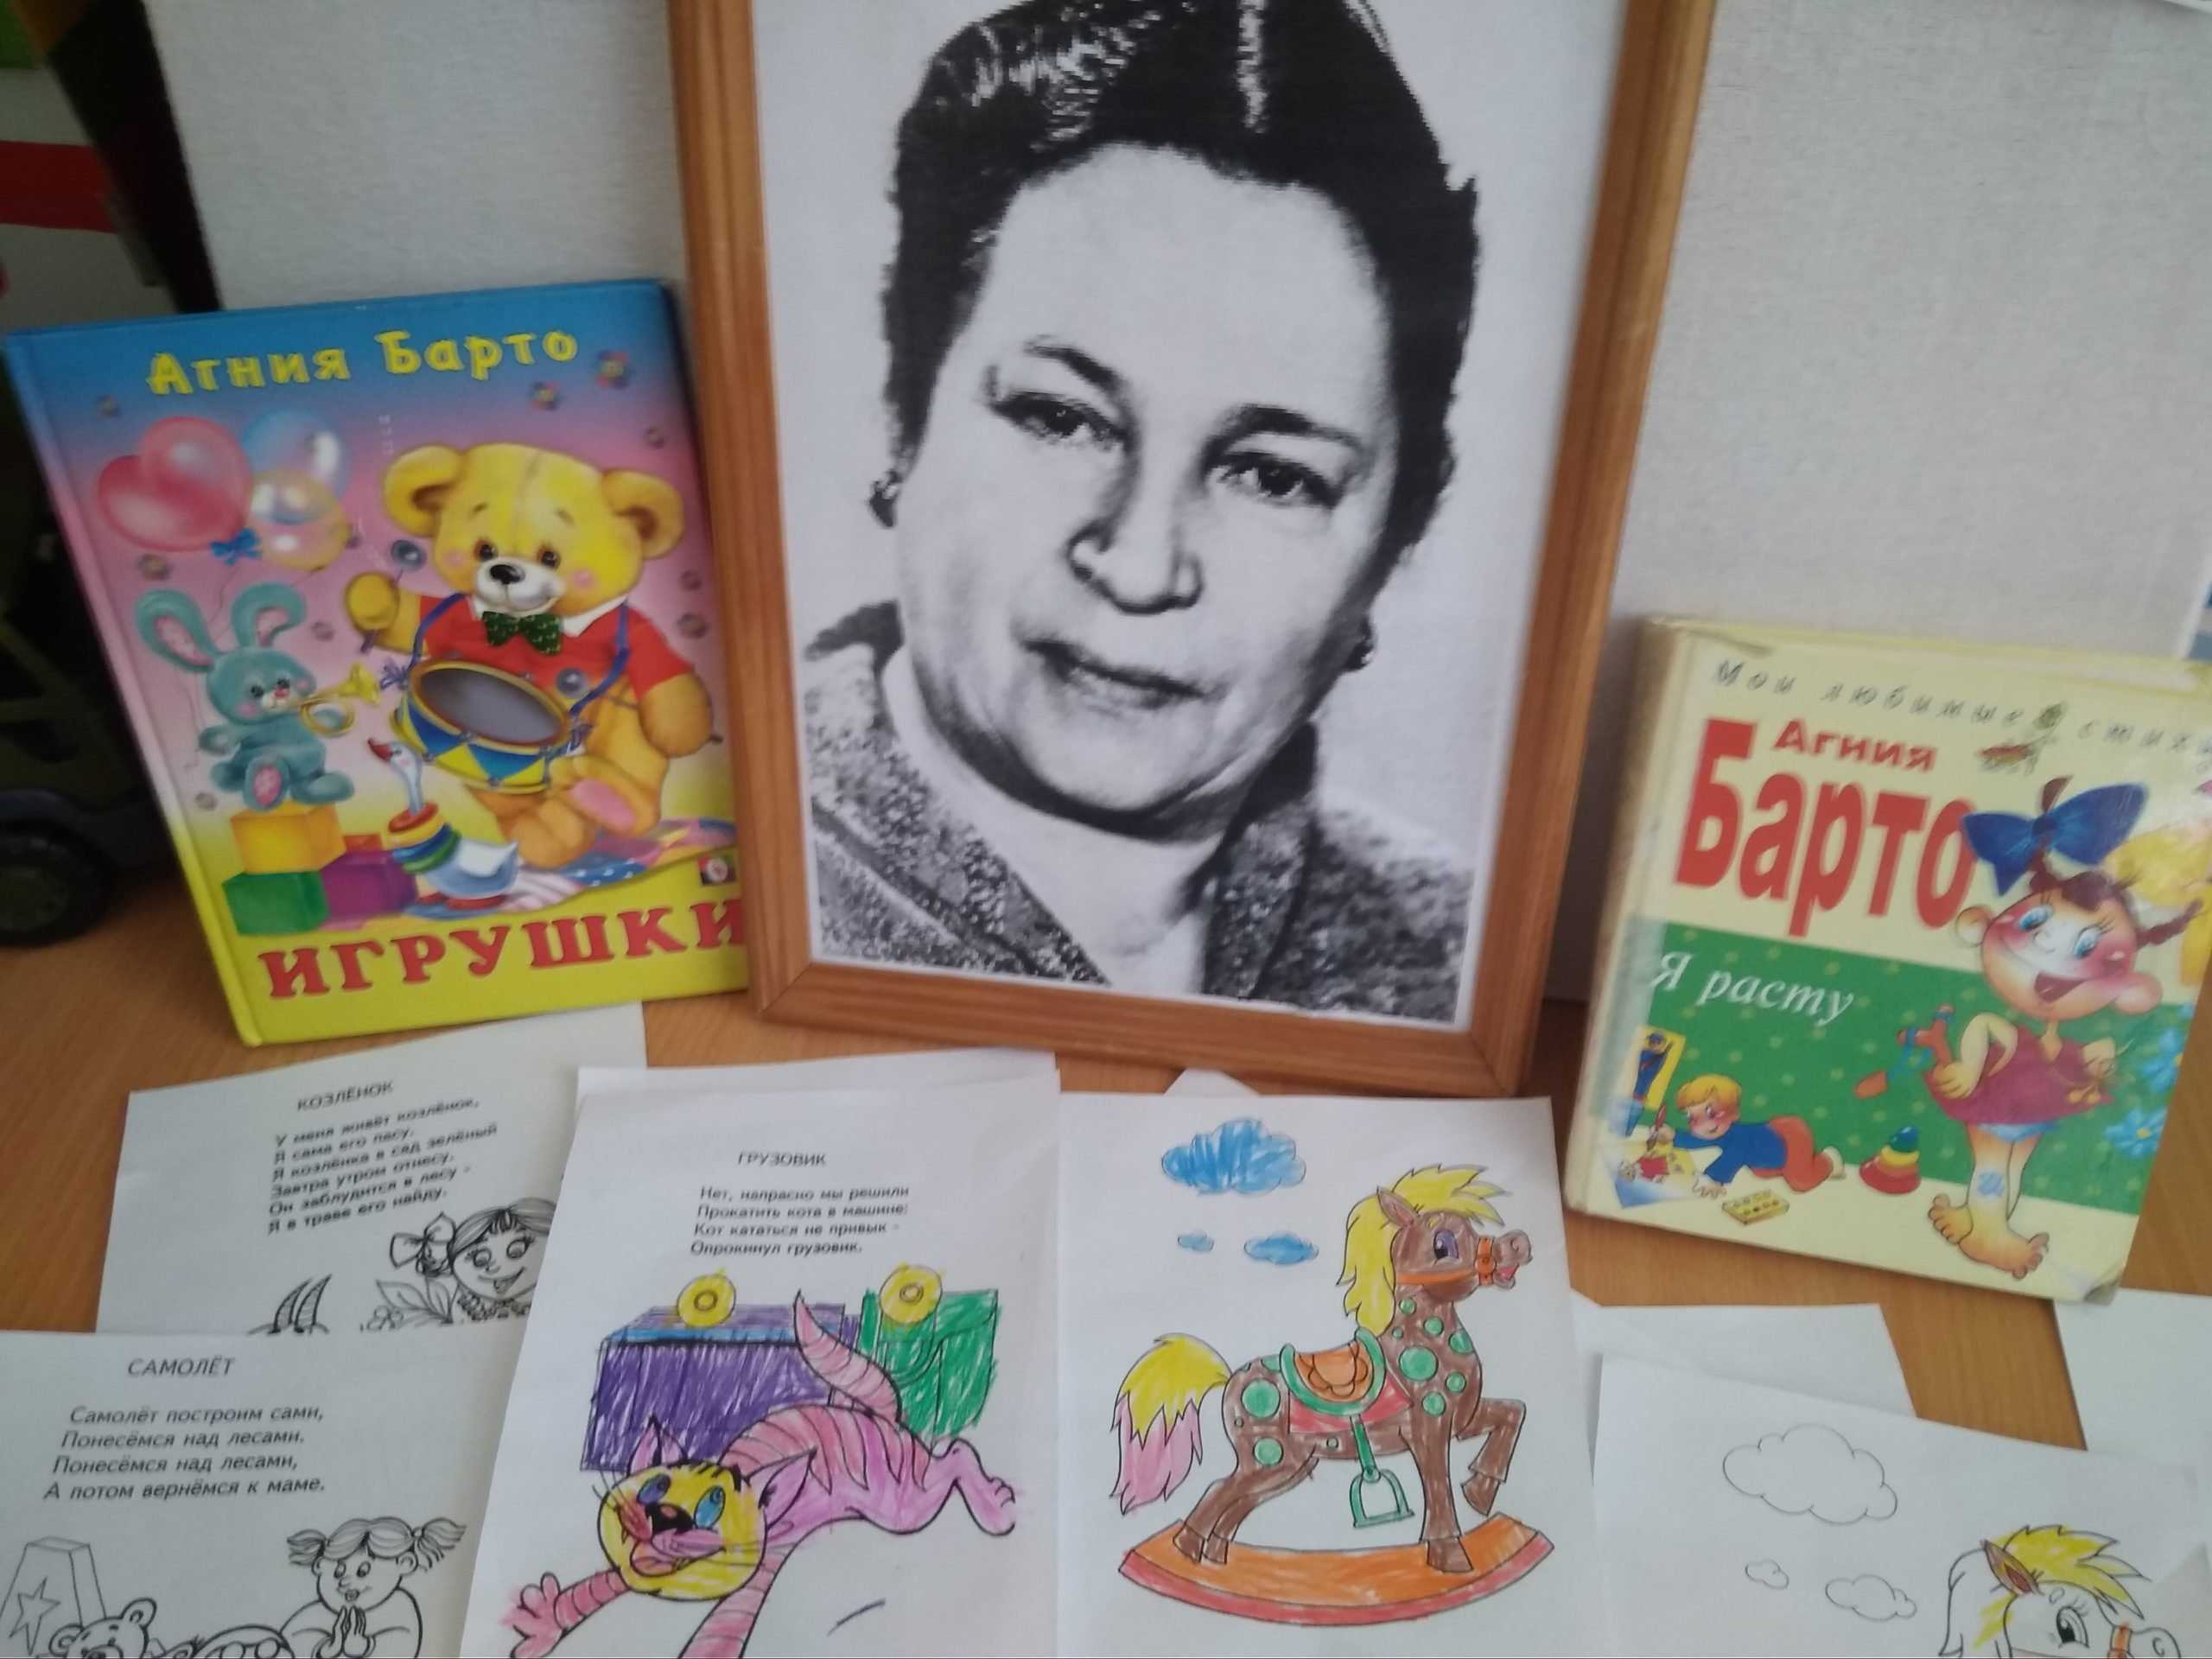 1 произведение барто. Иллюстрации к произведениям Агнии Барто для детей. Произведения Агнии Барто произведения. Герои произведений Агний Барто.